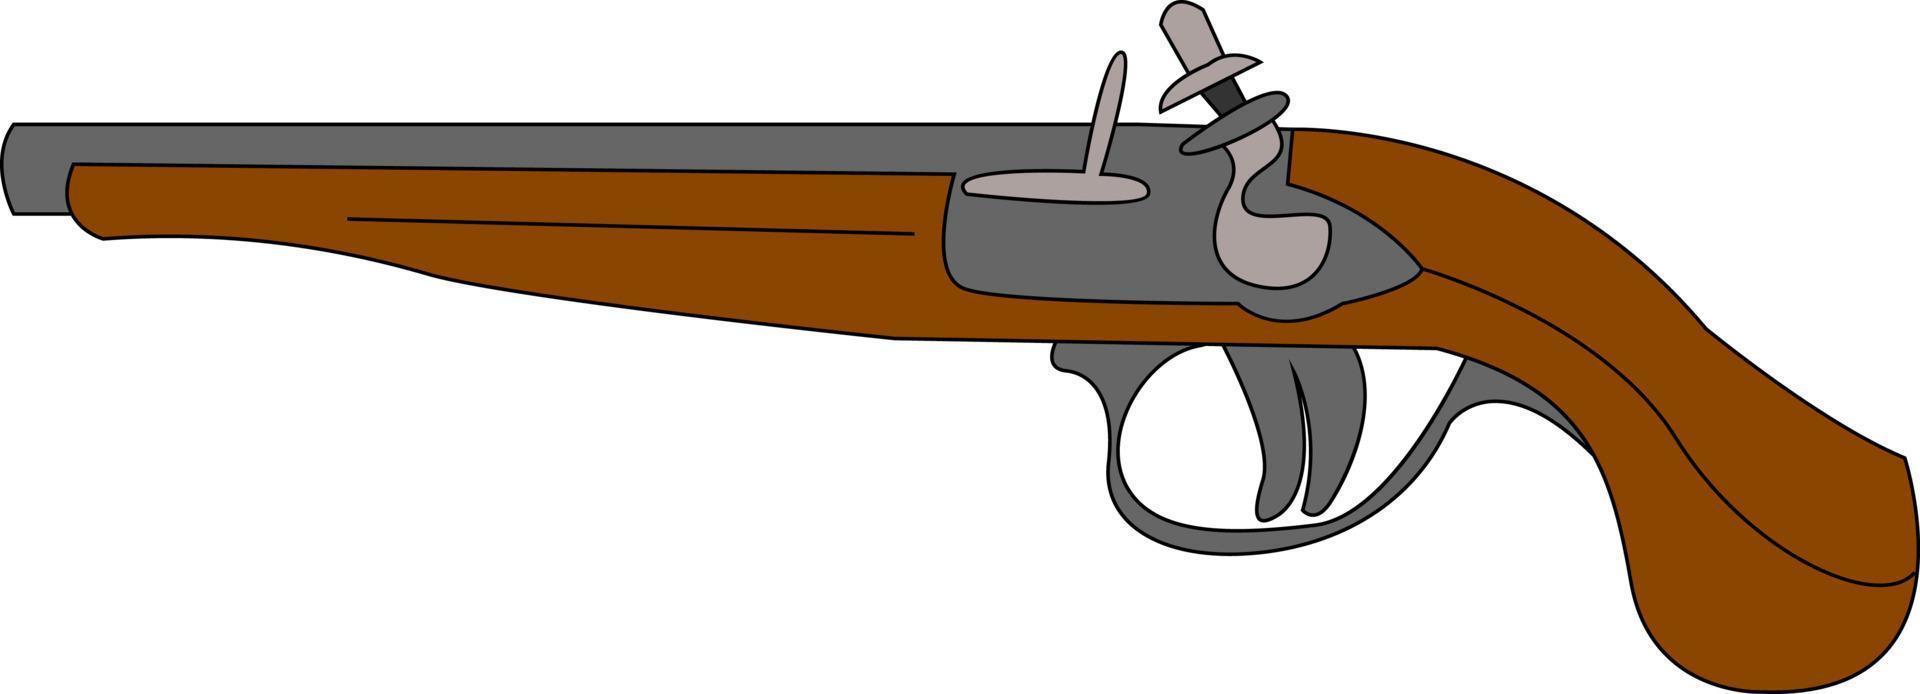 vieux fusil de mousquet, illustration, vecteur sur fond blanc.